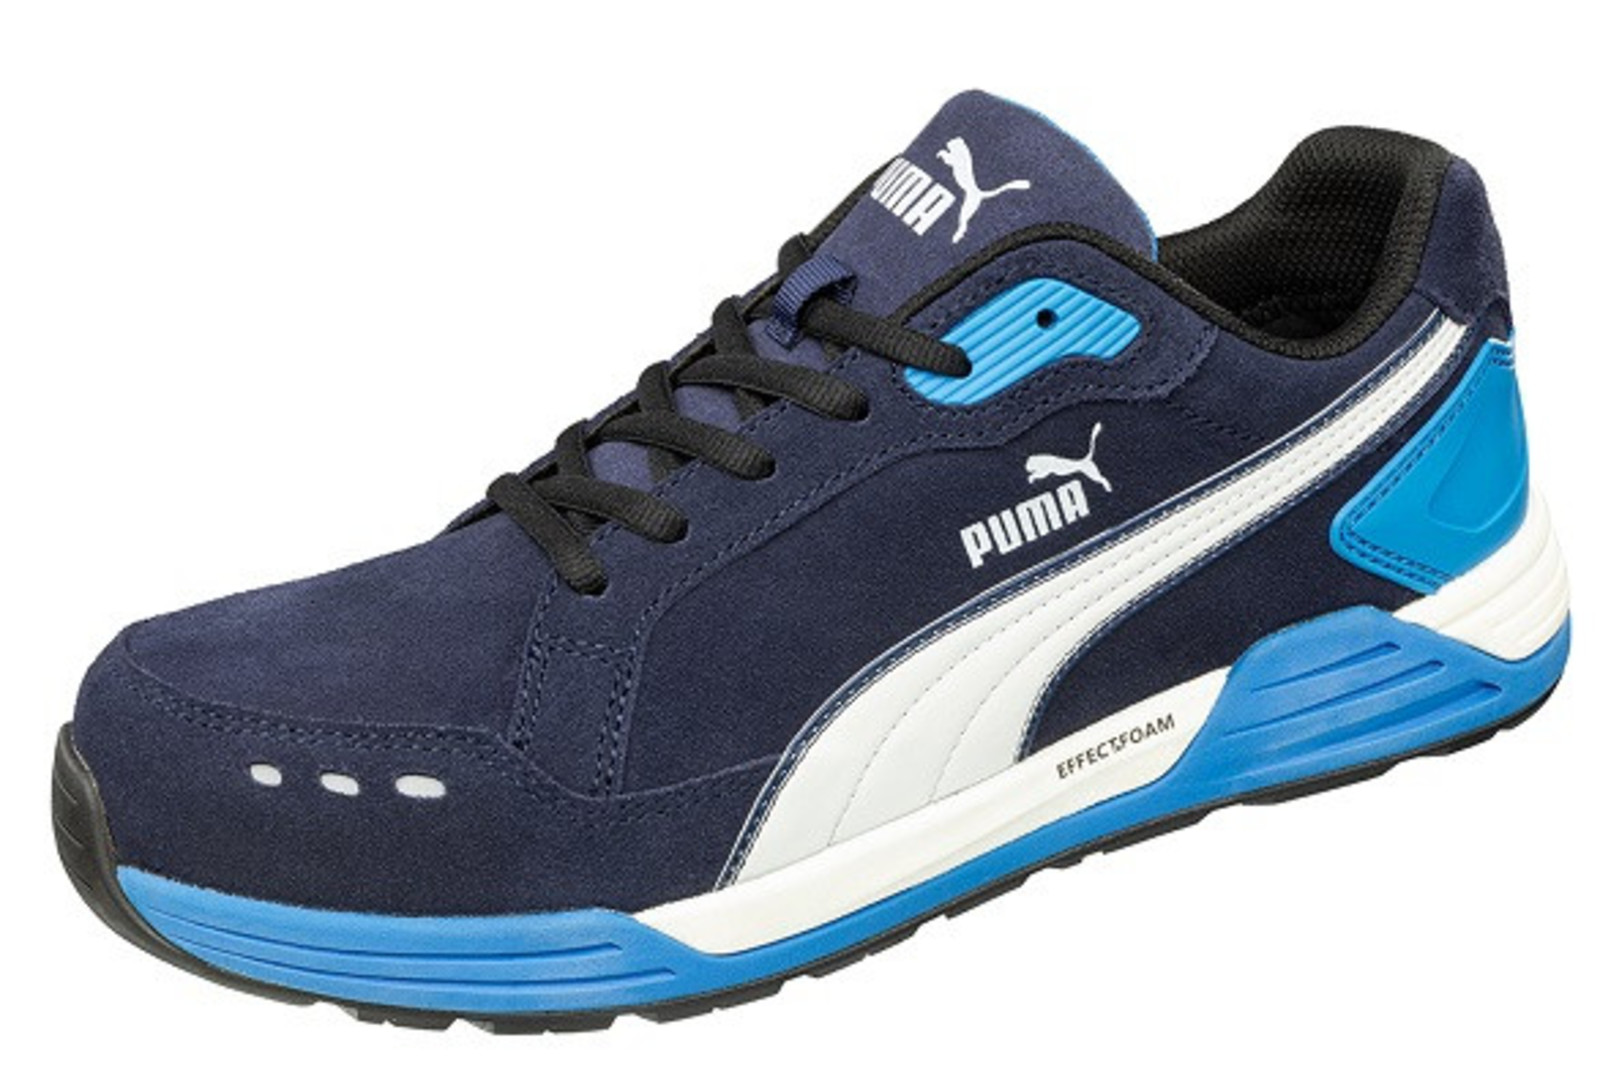 Bezpečnostná obuv Puma Airtwist S3 - veľkosť: 45, farba: modrá